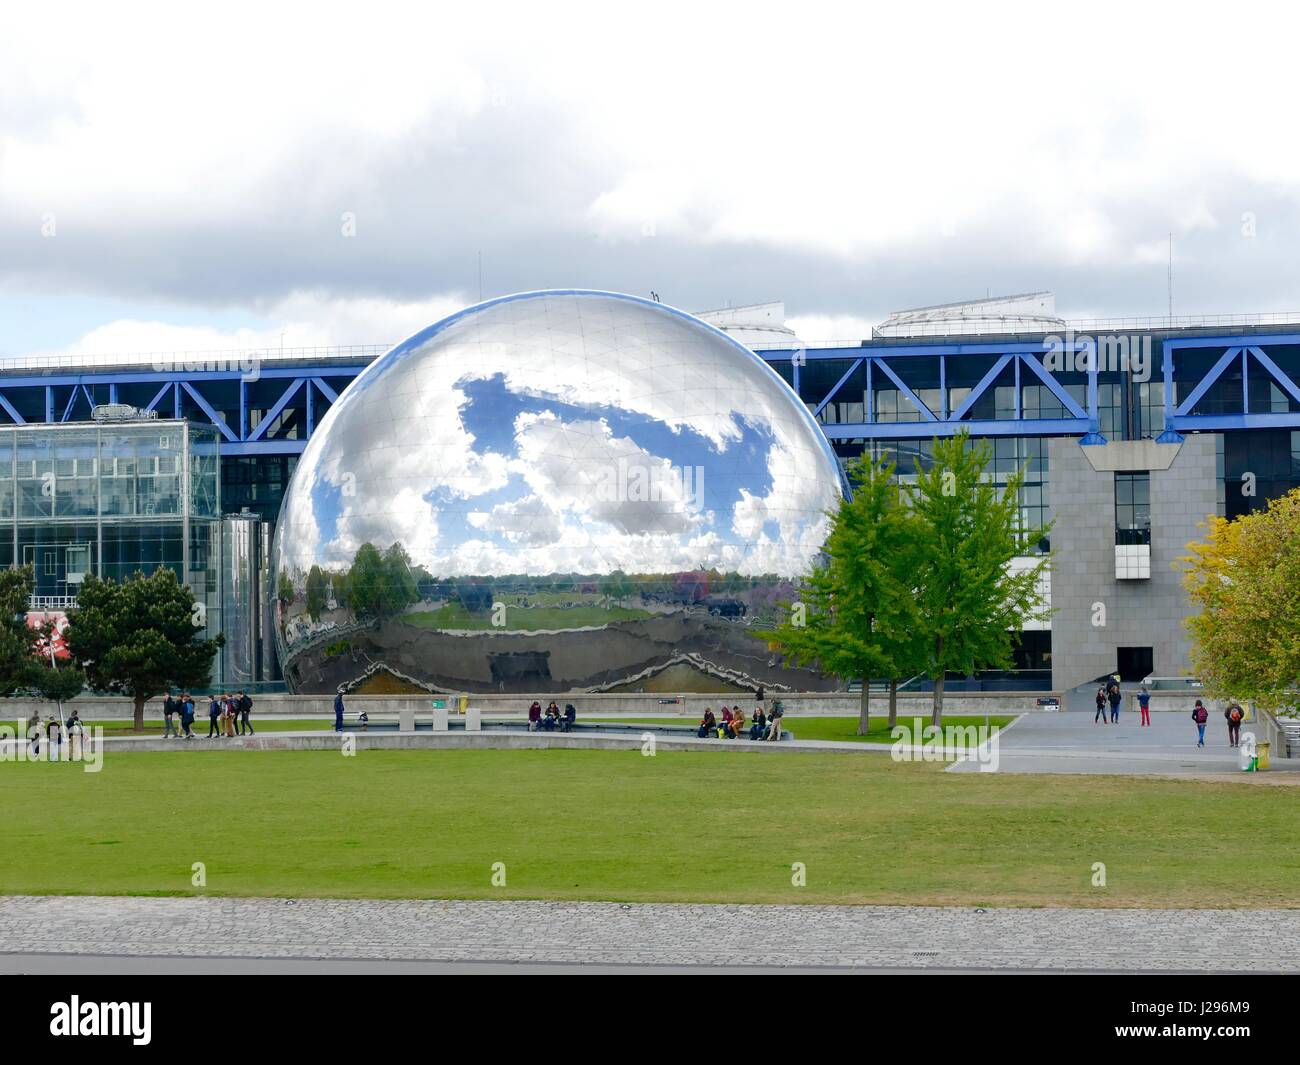 The géode at the Cité des Sciences et de l'Industrie at Parc de la Villette, 19th Arr., reflects vibrant blue sky and heavy clouds. Paris, France. Stock Photo